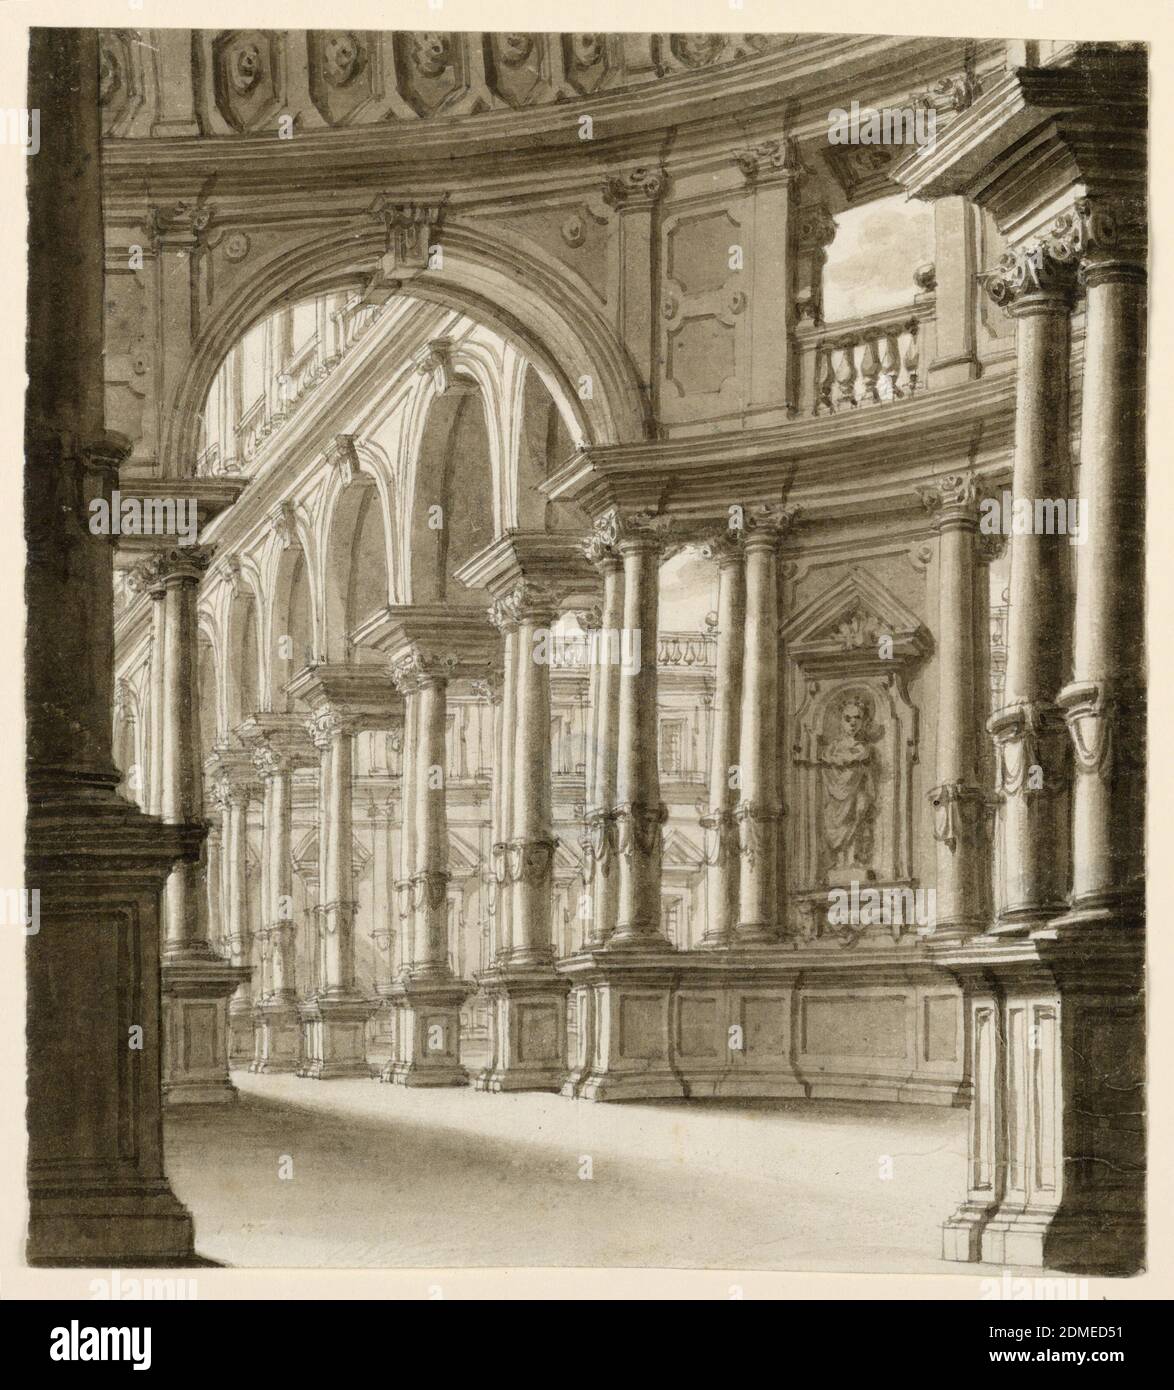 Diseño escénico, interior del Portico renacentista, tinta pluma y bistre,  cepillo y lavado sobre papel, rectángulo horizontal. Pórtico de estilo  renacentista con columnas acopladas en el parque, Italia, principios del  siglo 19,